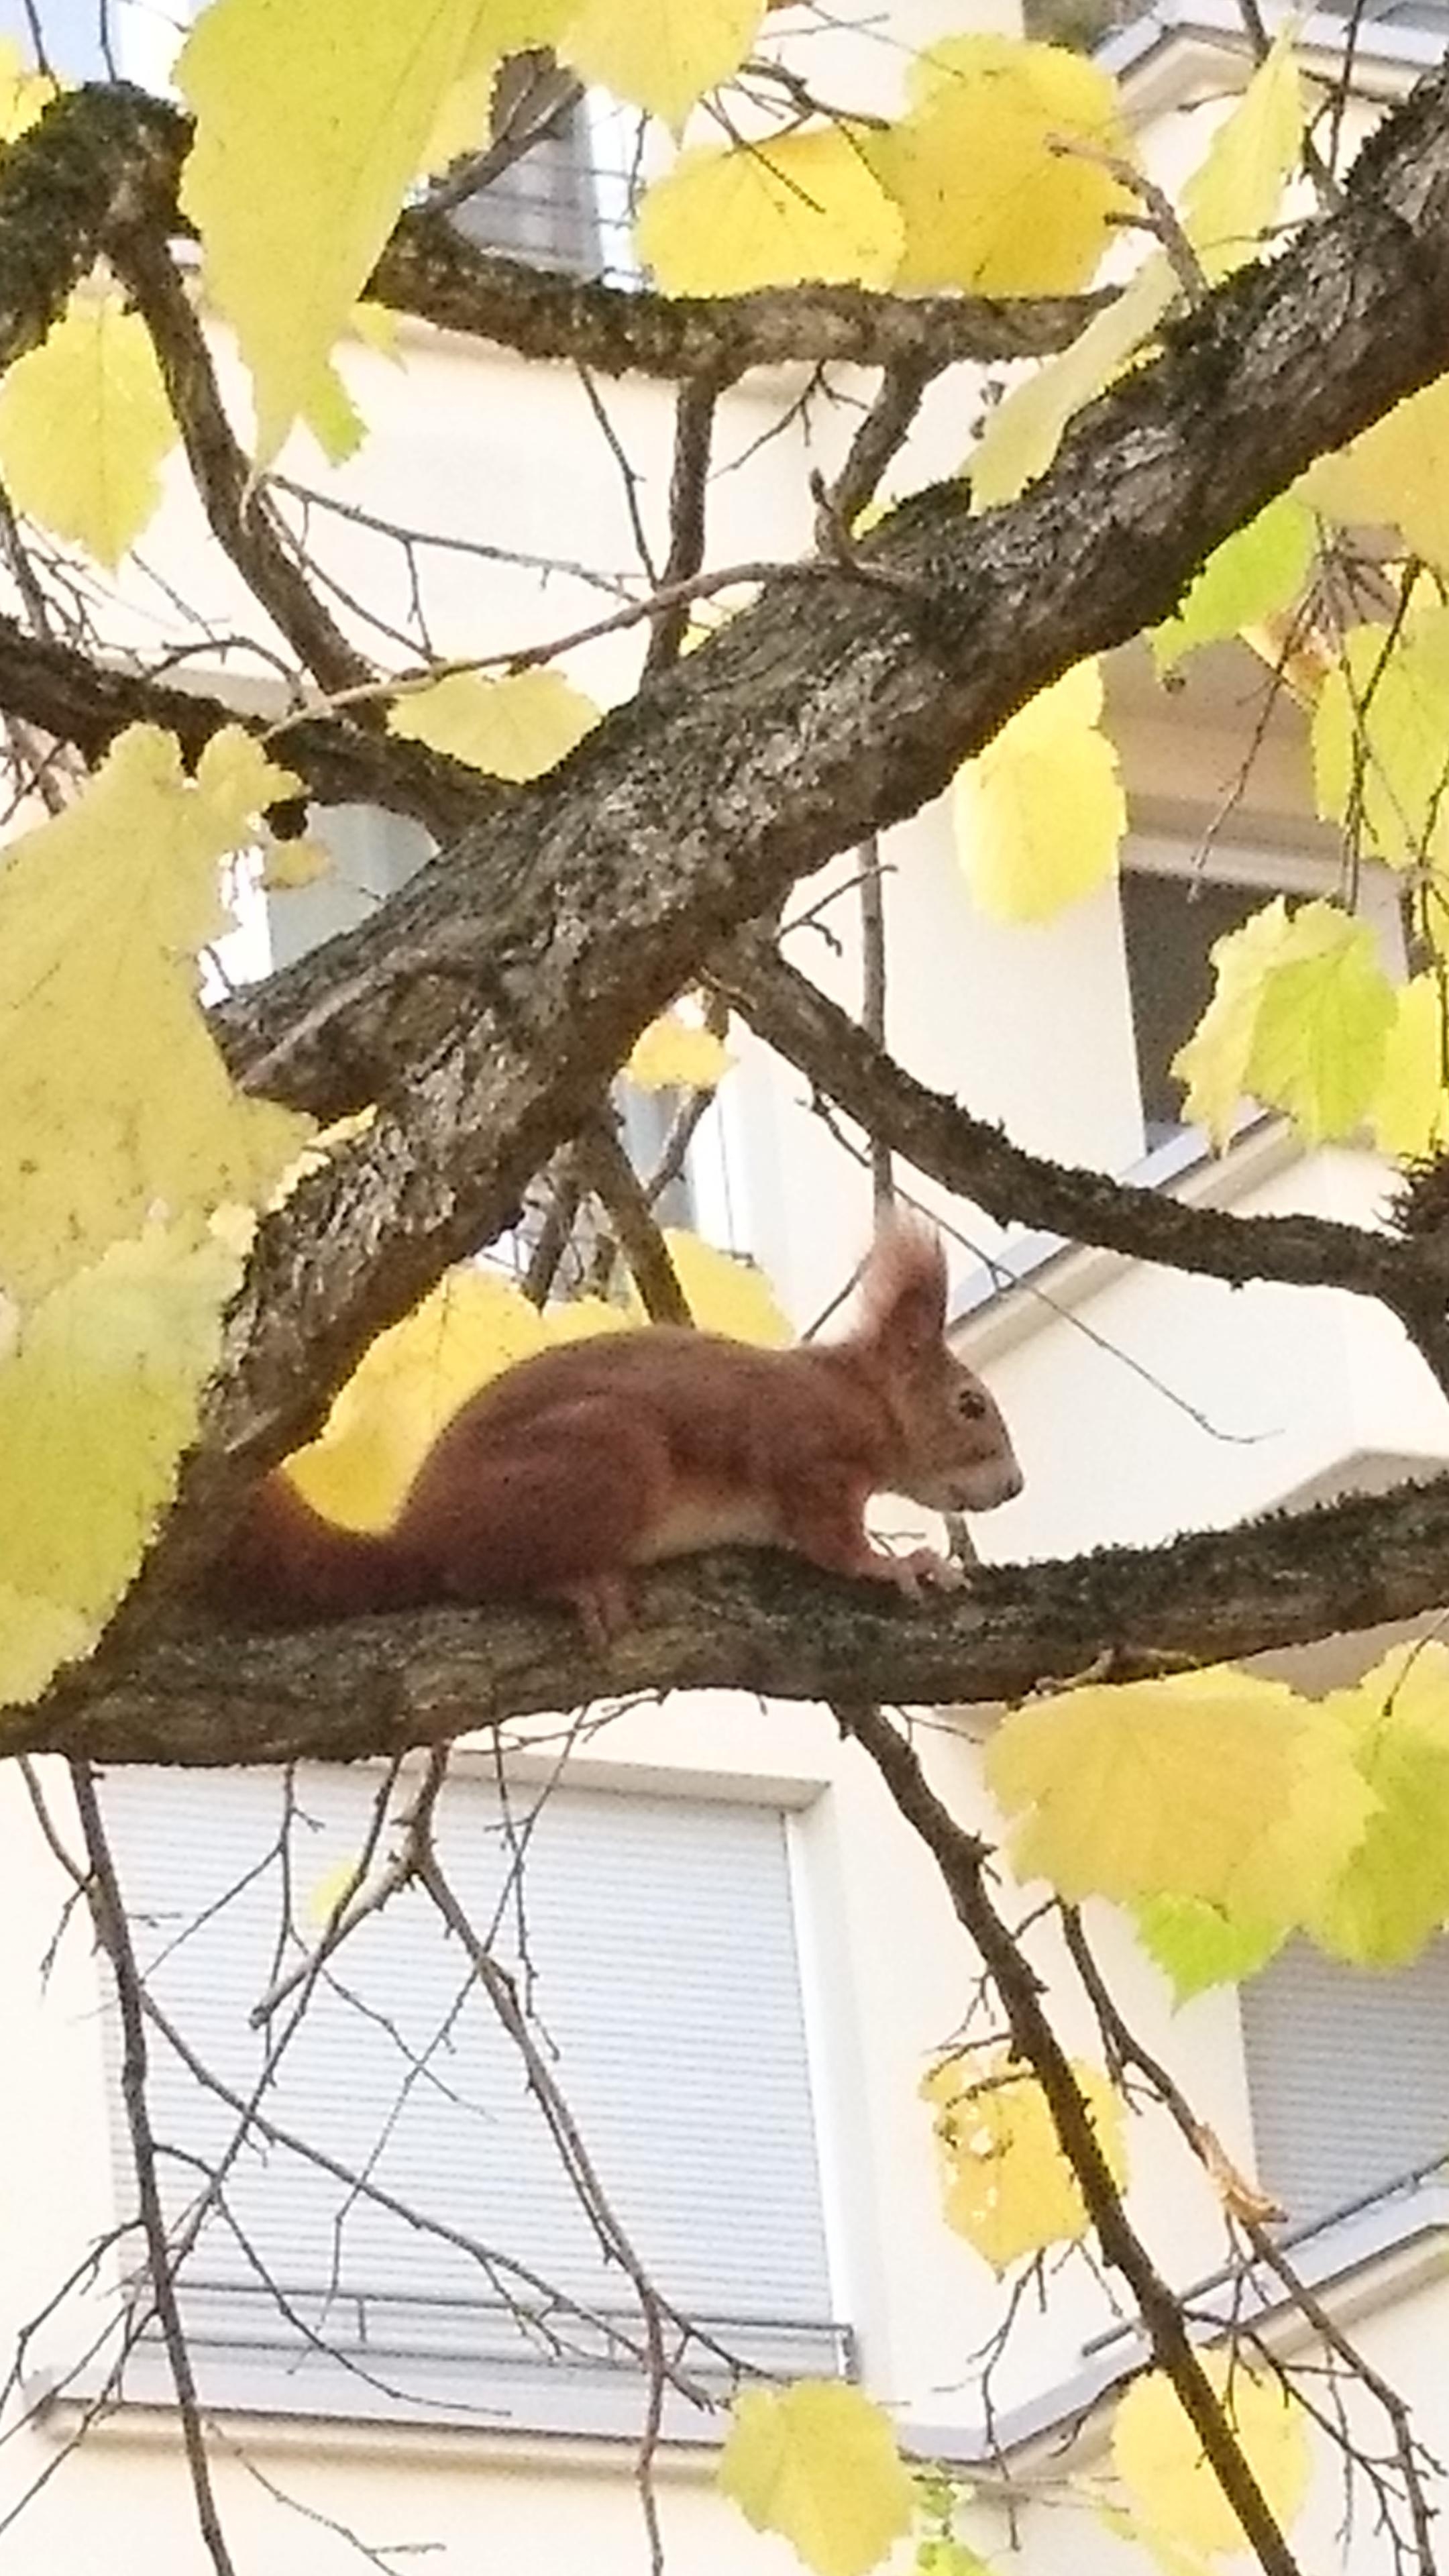 Nun nur noch ein paar leckere Nüsse suchen, dann kann der Winter kommen 🍁🐿️

#Eichhörnchen #Herbst #Oktober 